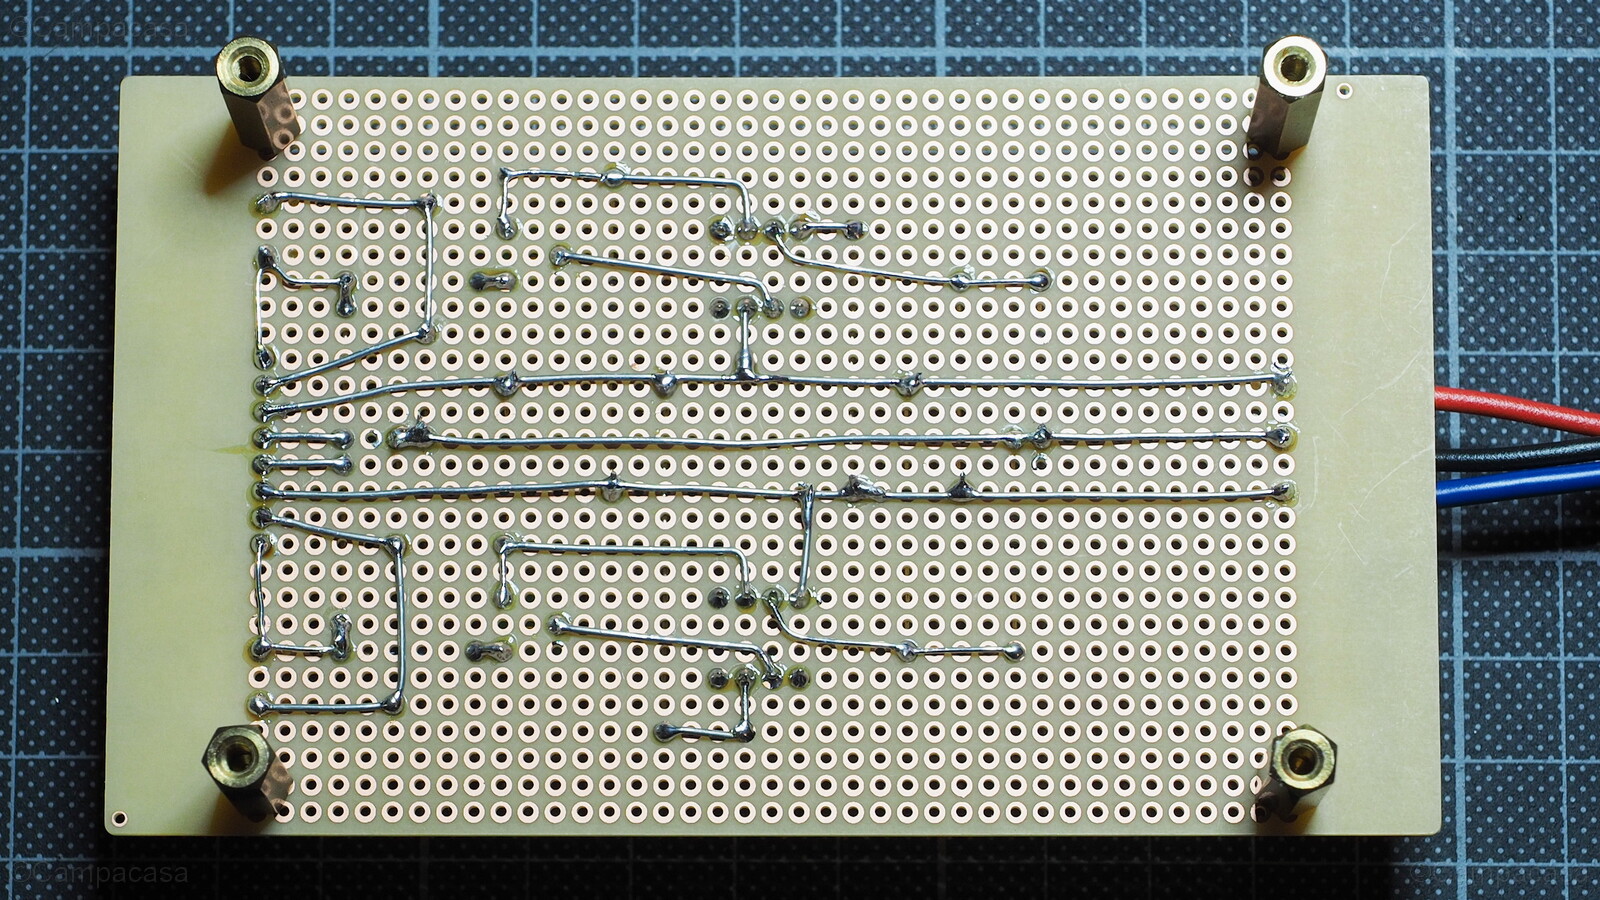 Transistor Matching Circuit Board, wiring side